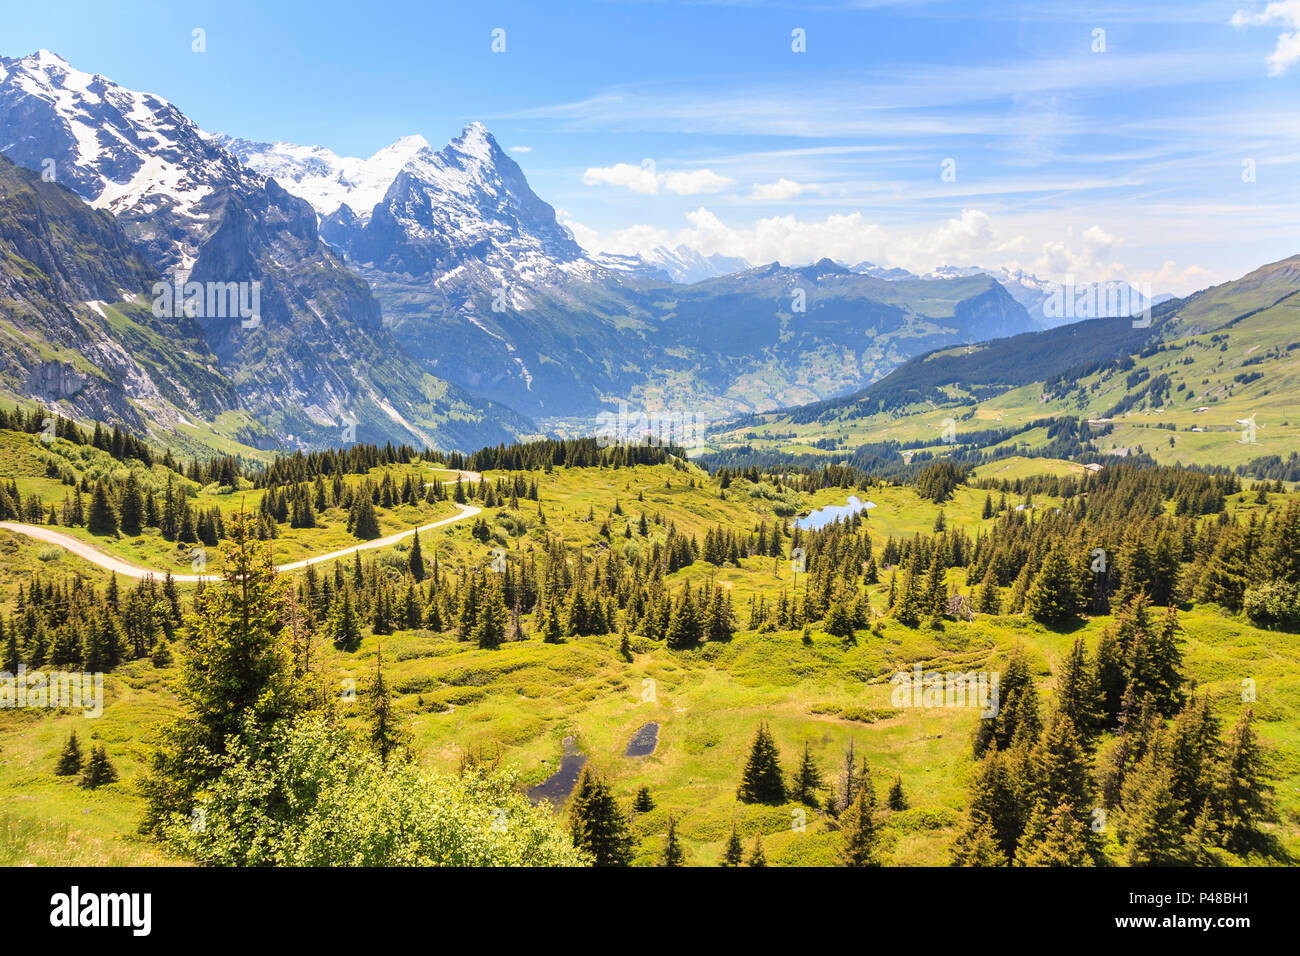 Panorama der schönen Landschaft von Grosse Scheidegg nach Grindelwald,  Berner Oberland, Schweiz, mit Wetterhorn und Streckhorn Berge  Stockfotografie - Alamy